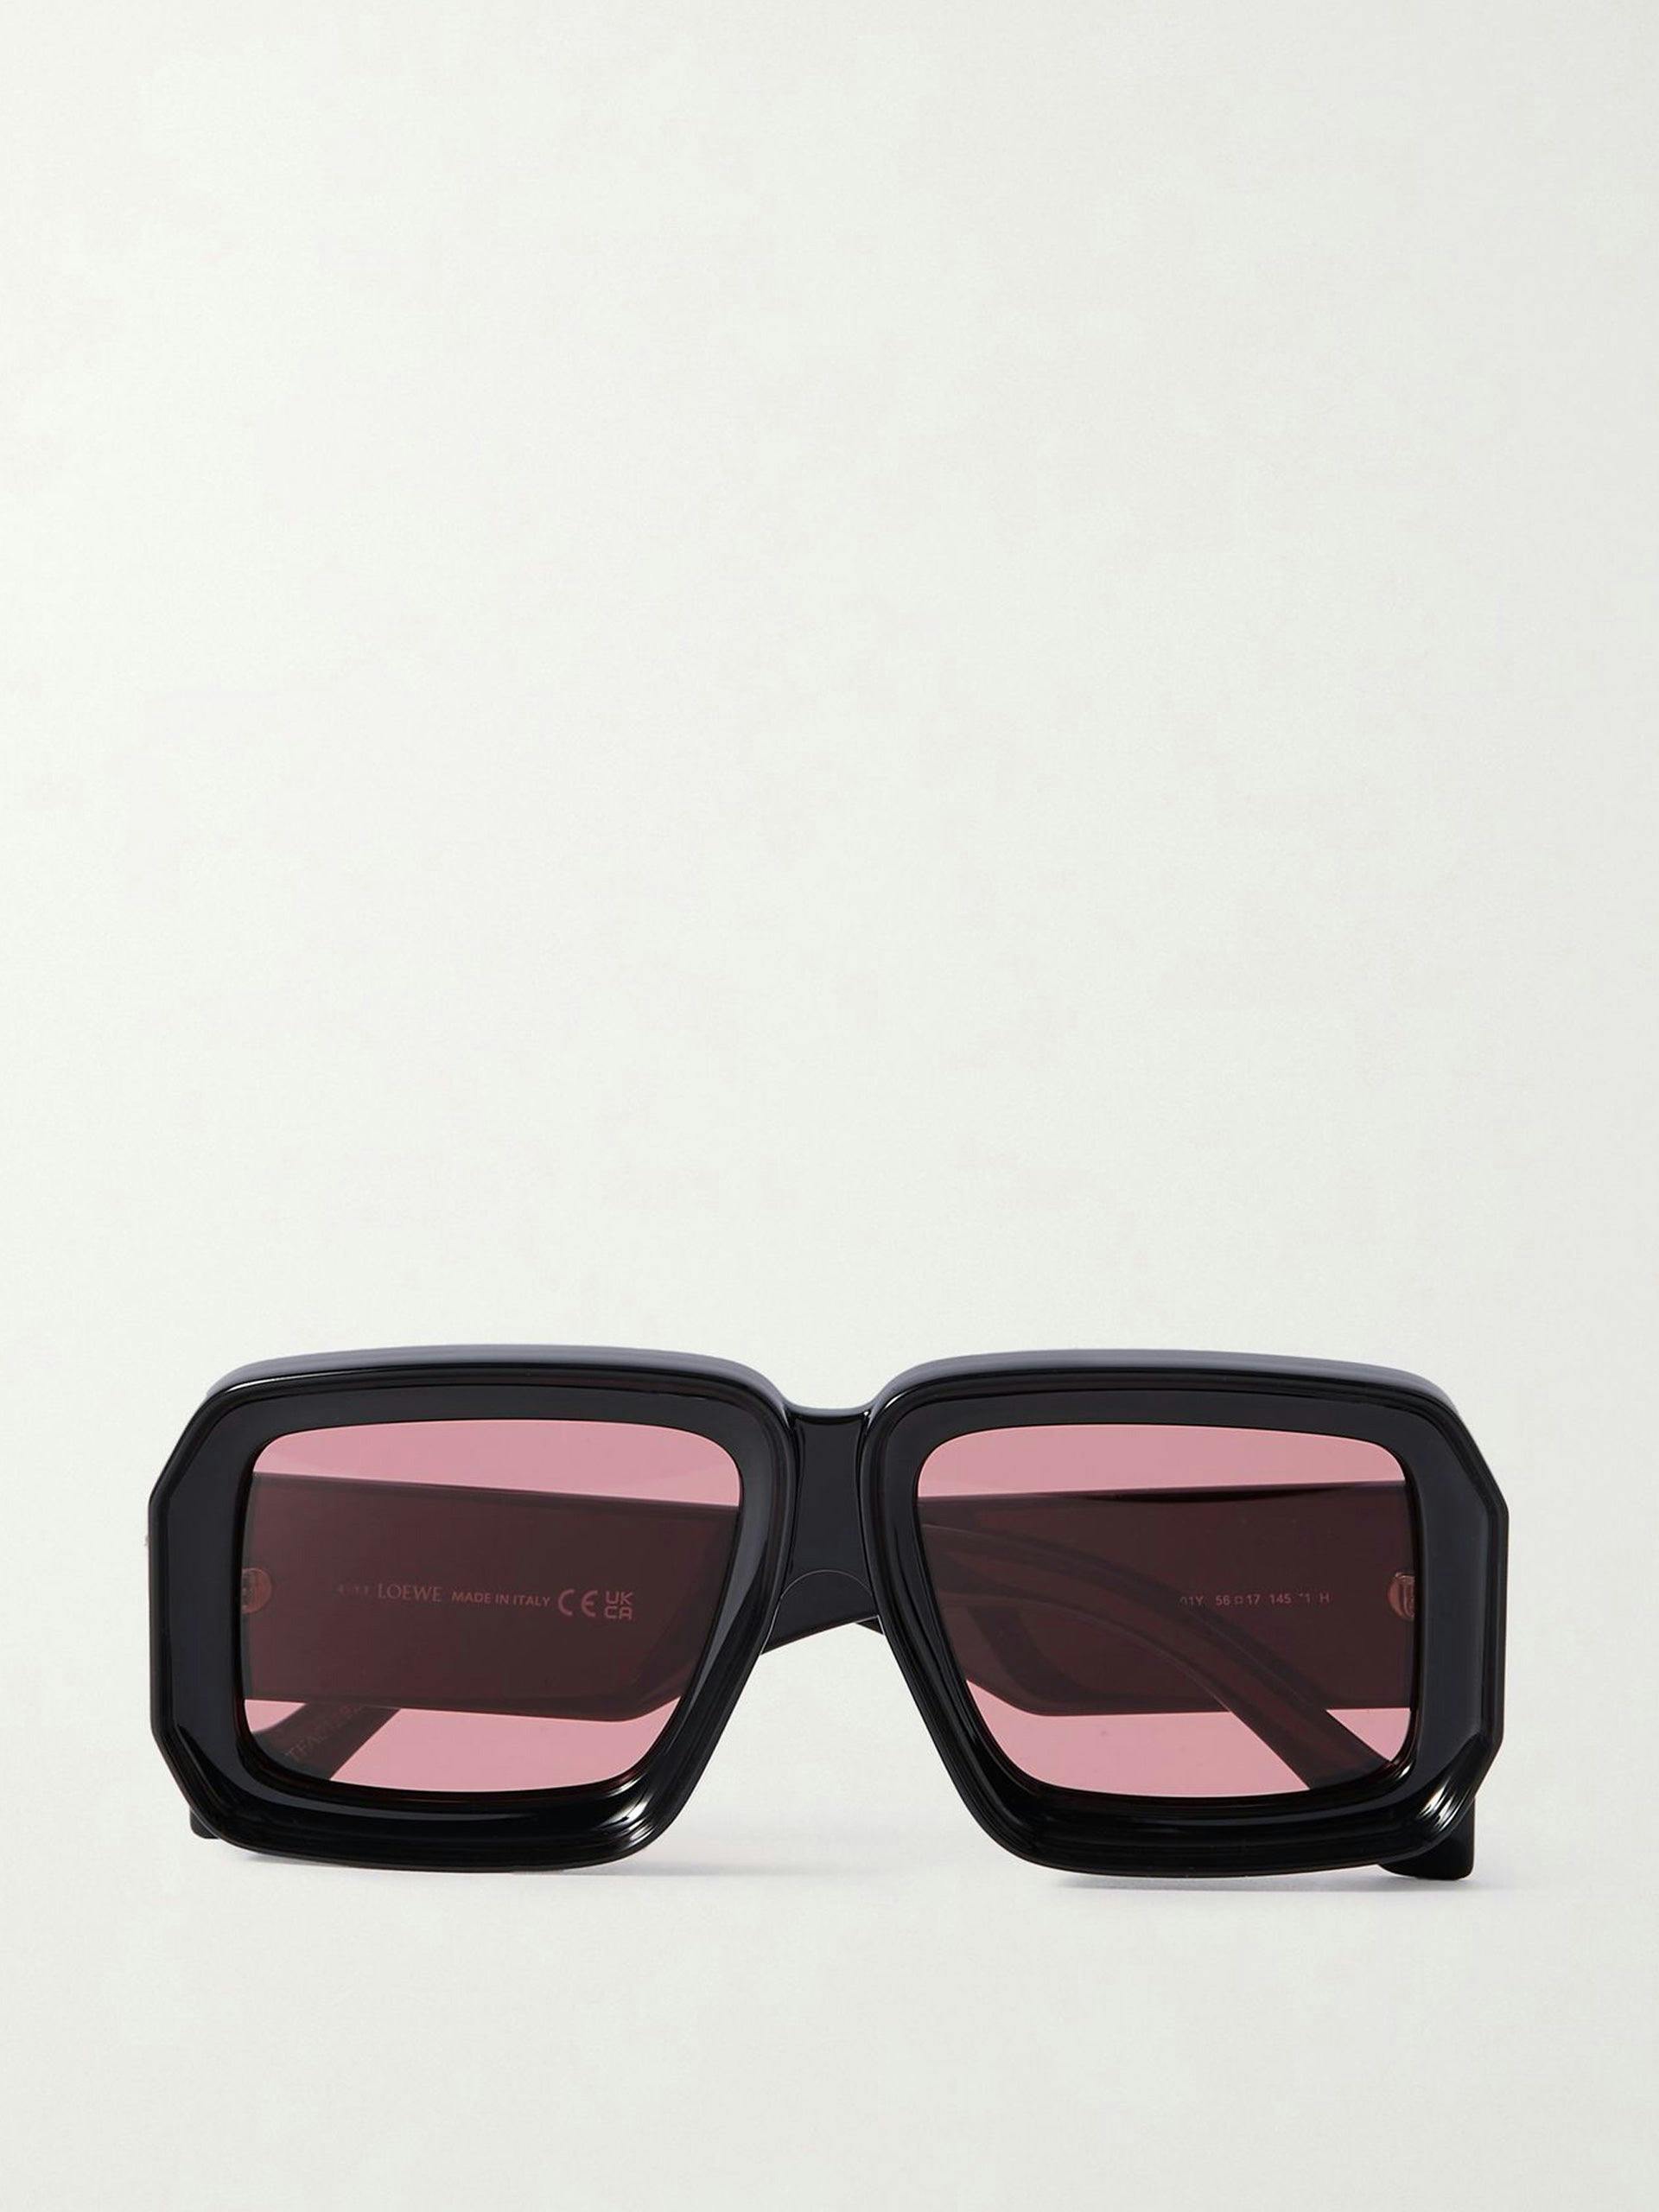 Square black-framed sunglasses